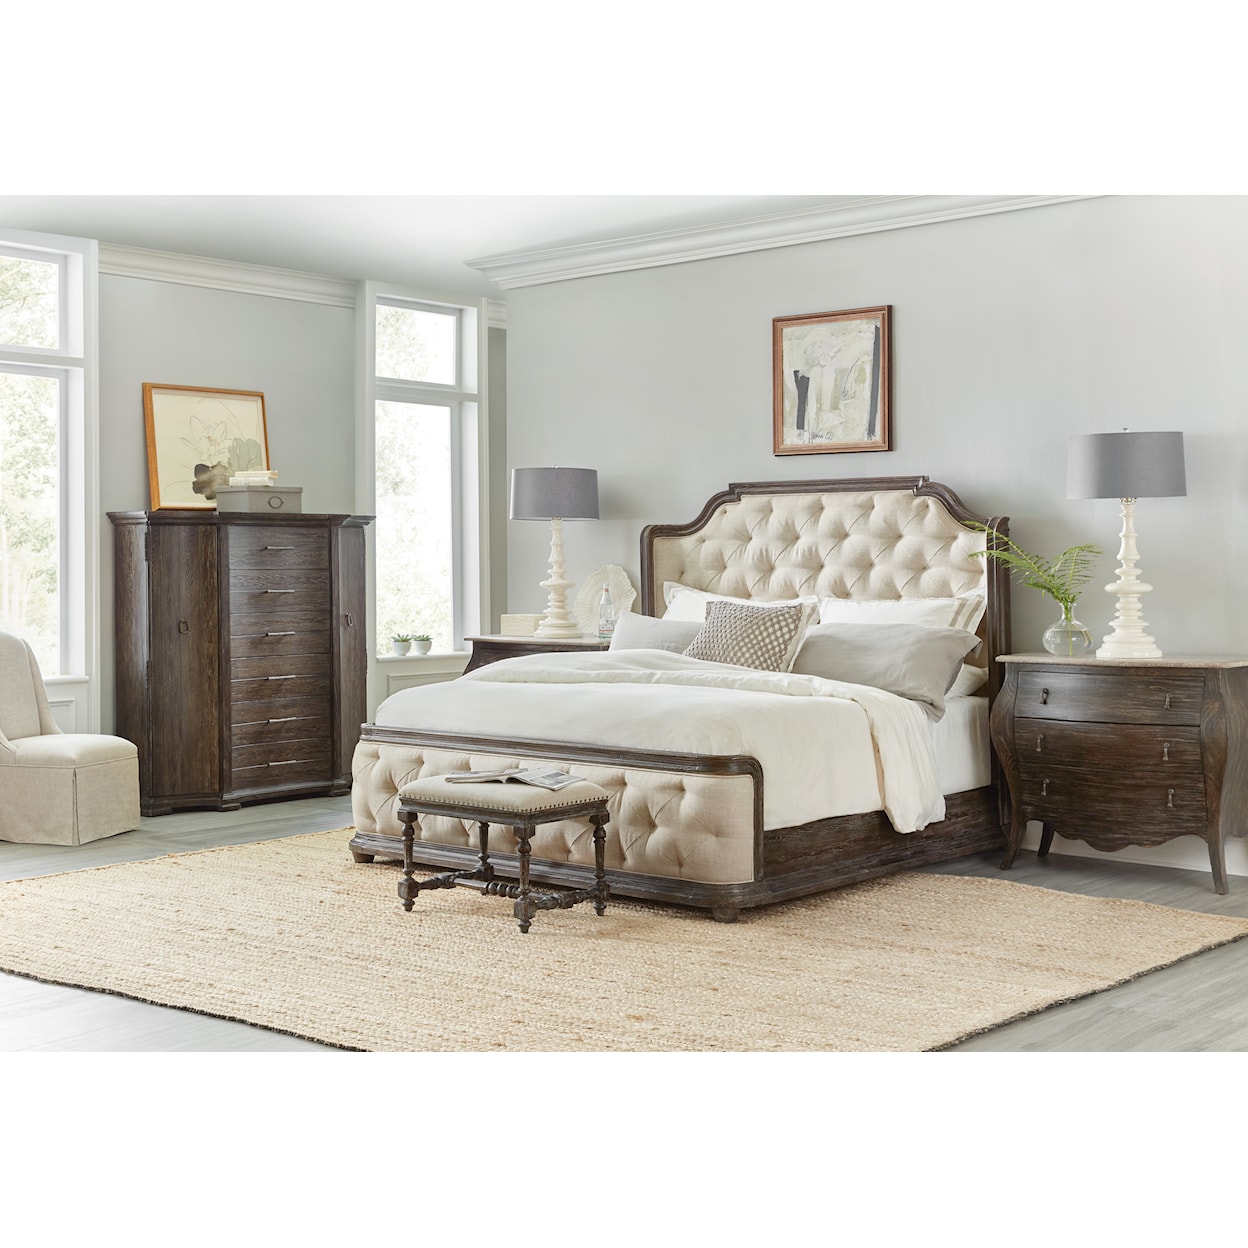 Hooker Furniture Traditions Cali King Bedroom Set